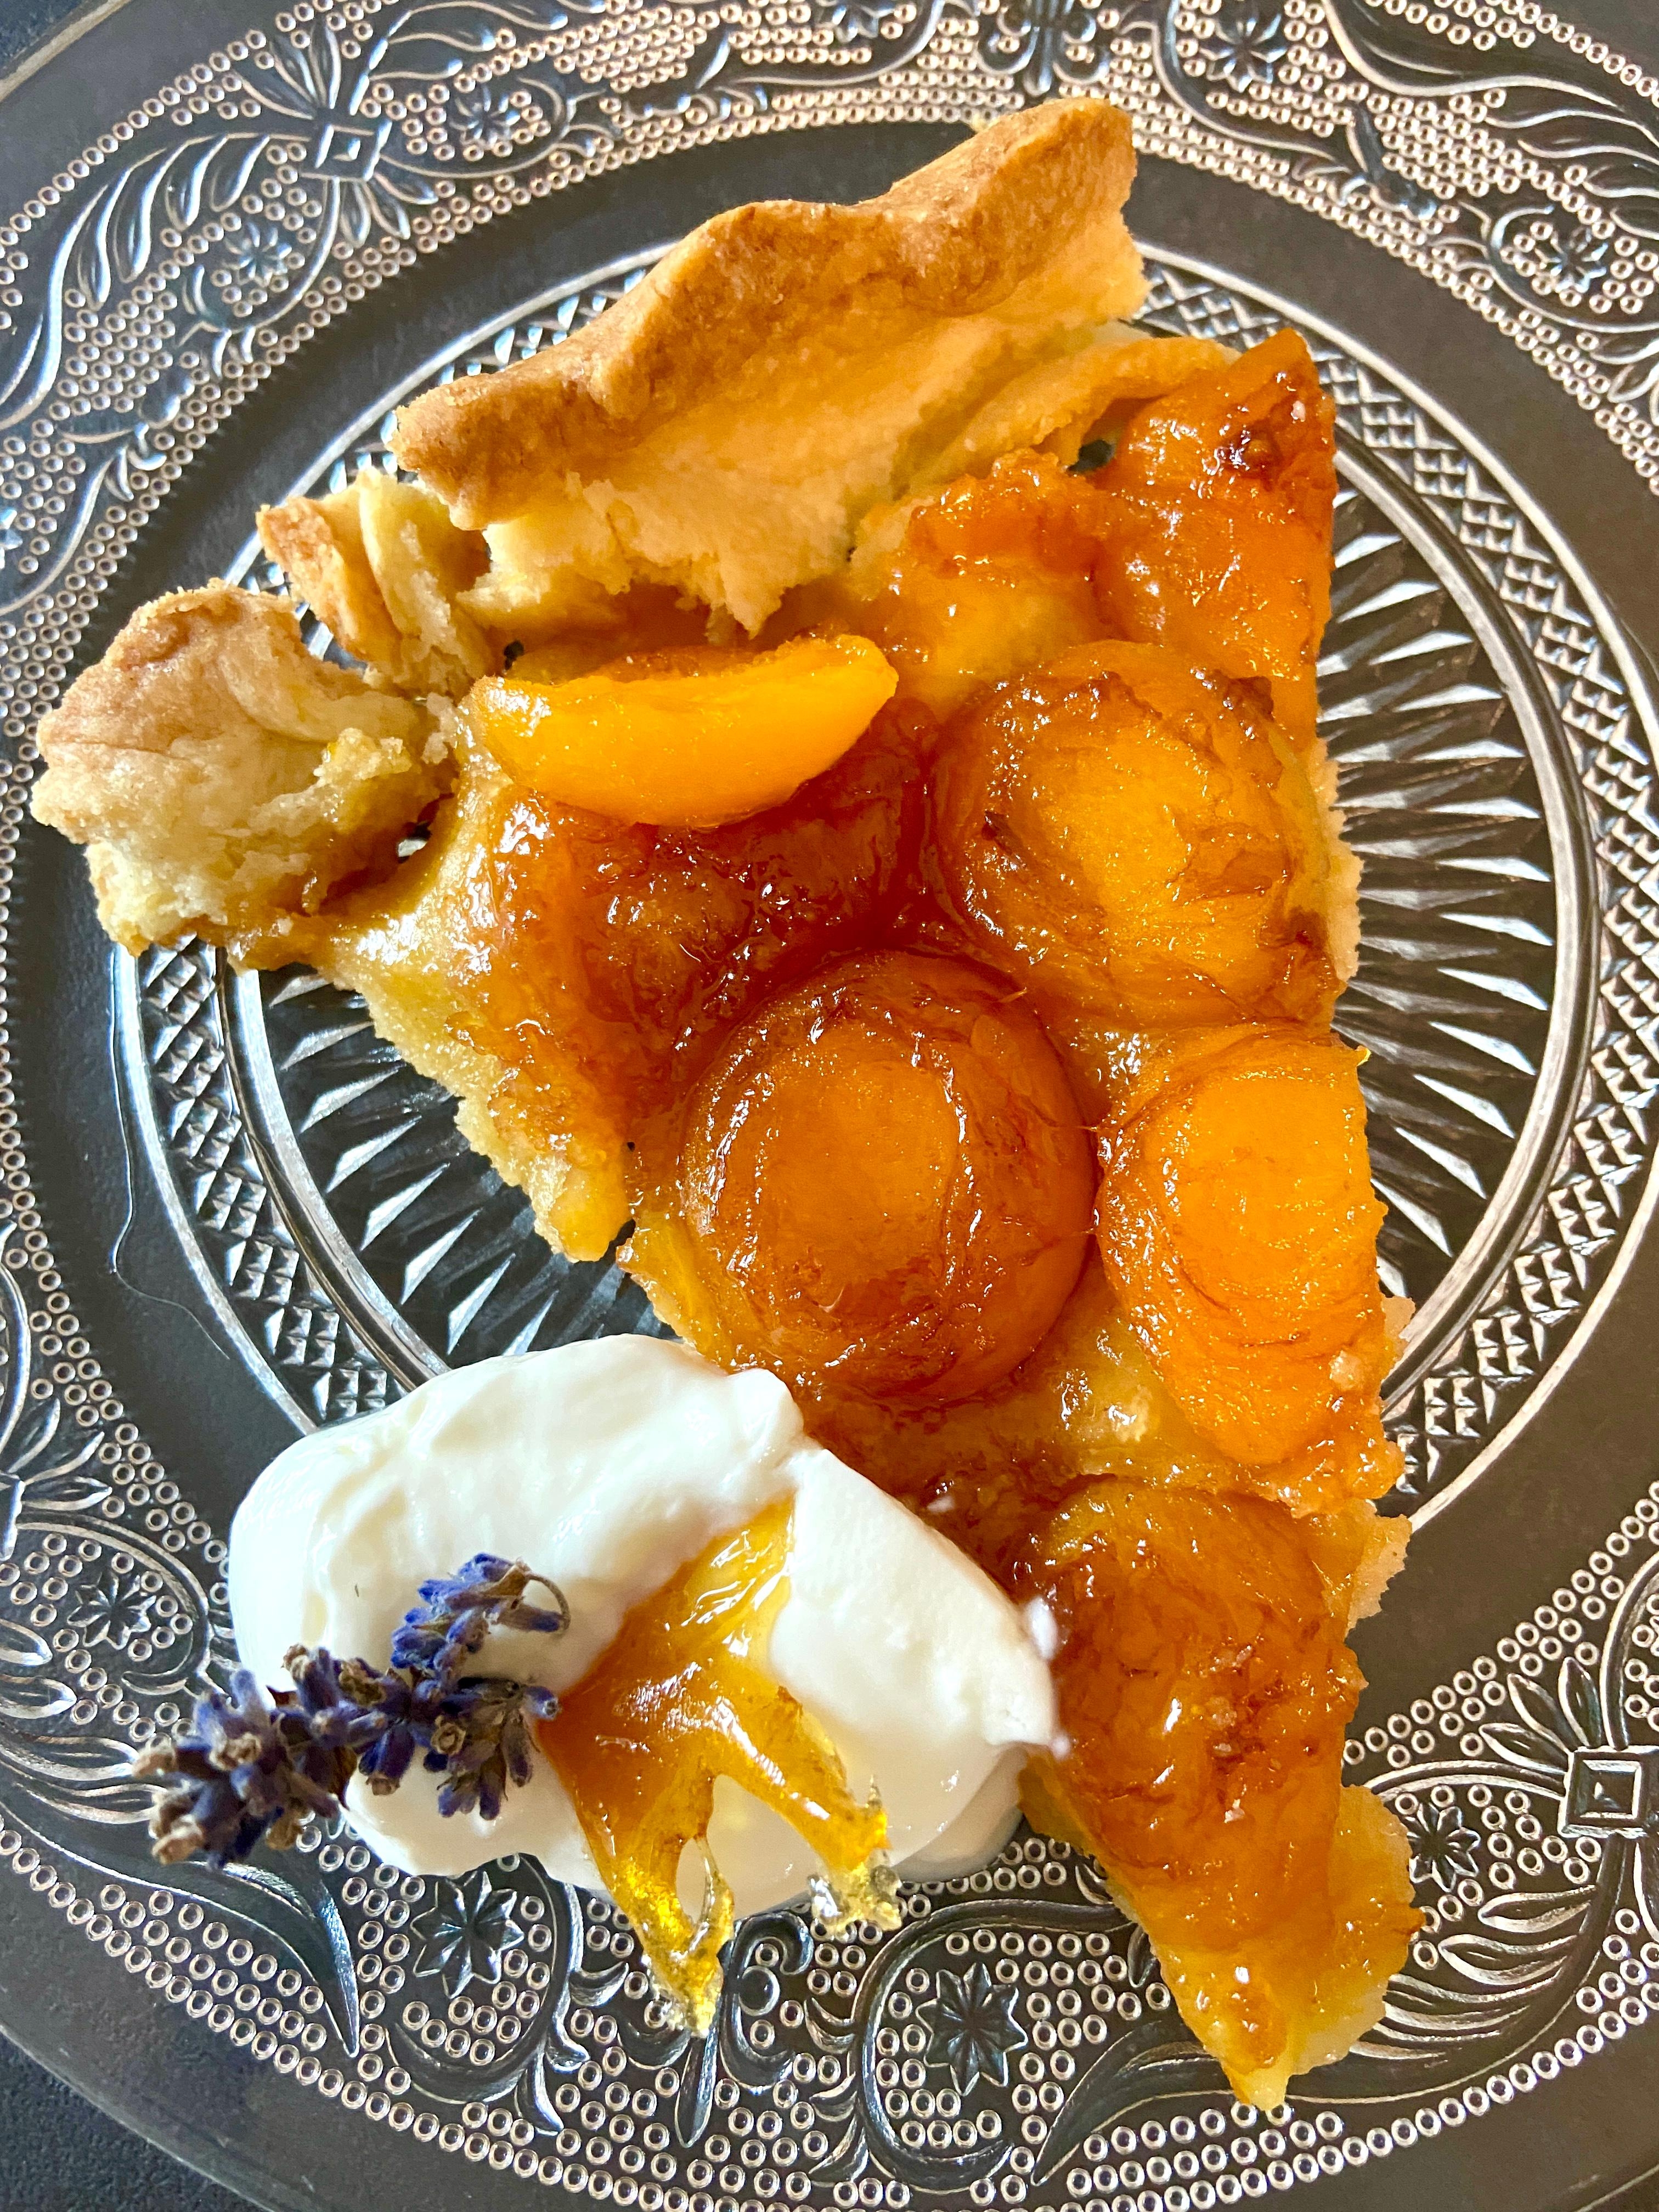 Aprikosen-Tarte-Tatin 🍑
#aprikosentartetatin#backliebe#aprikosen#kaffeeundkuchen#lavendel#sonntagskaffee#kaffeeklatsch